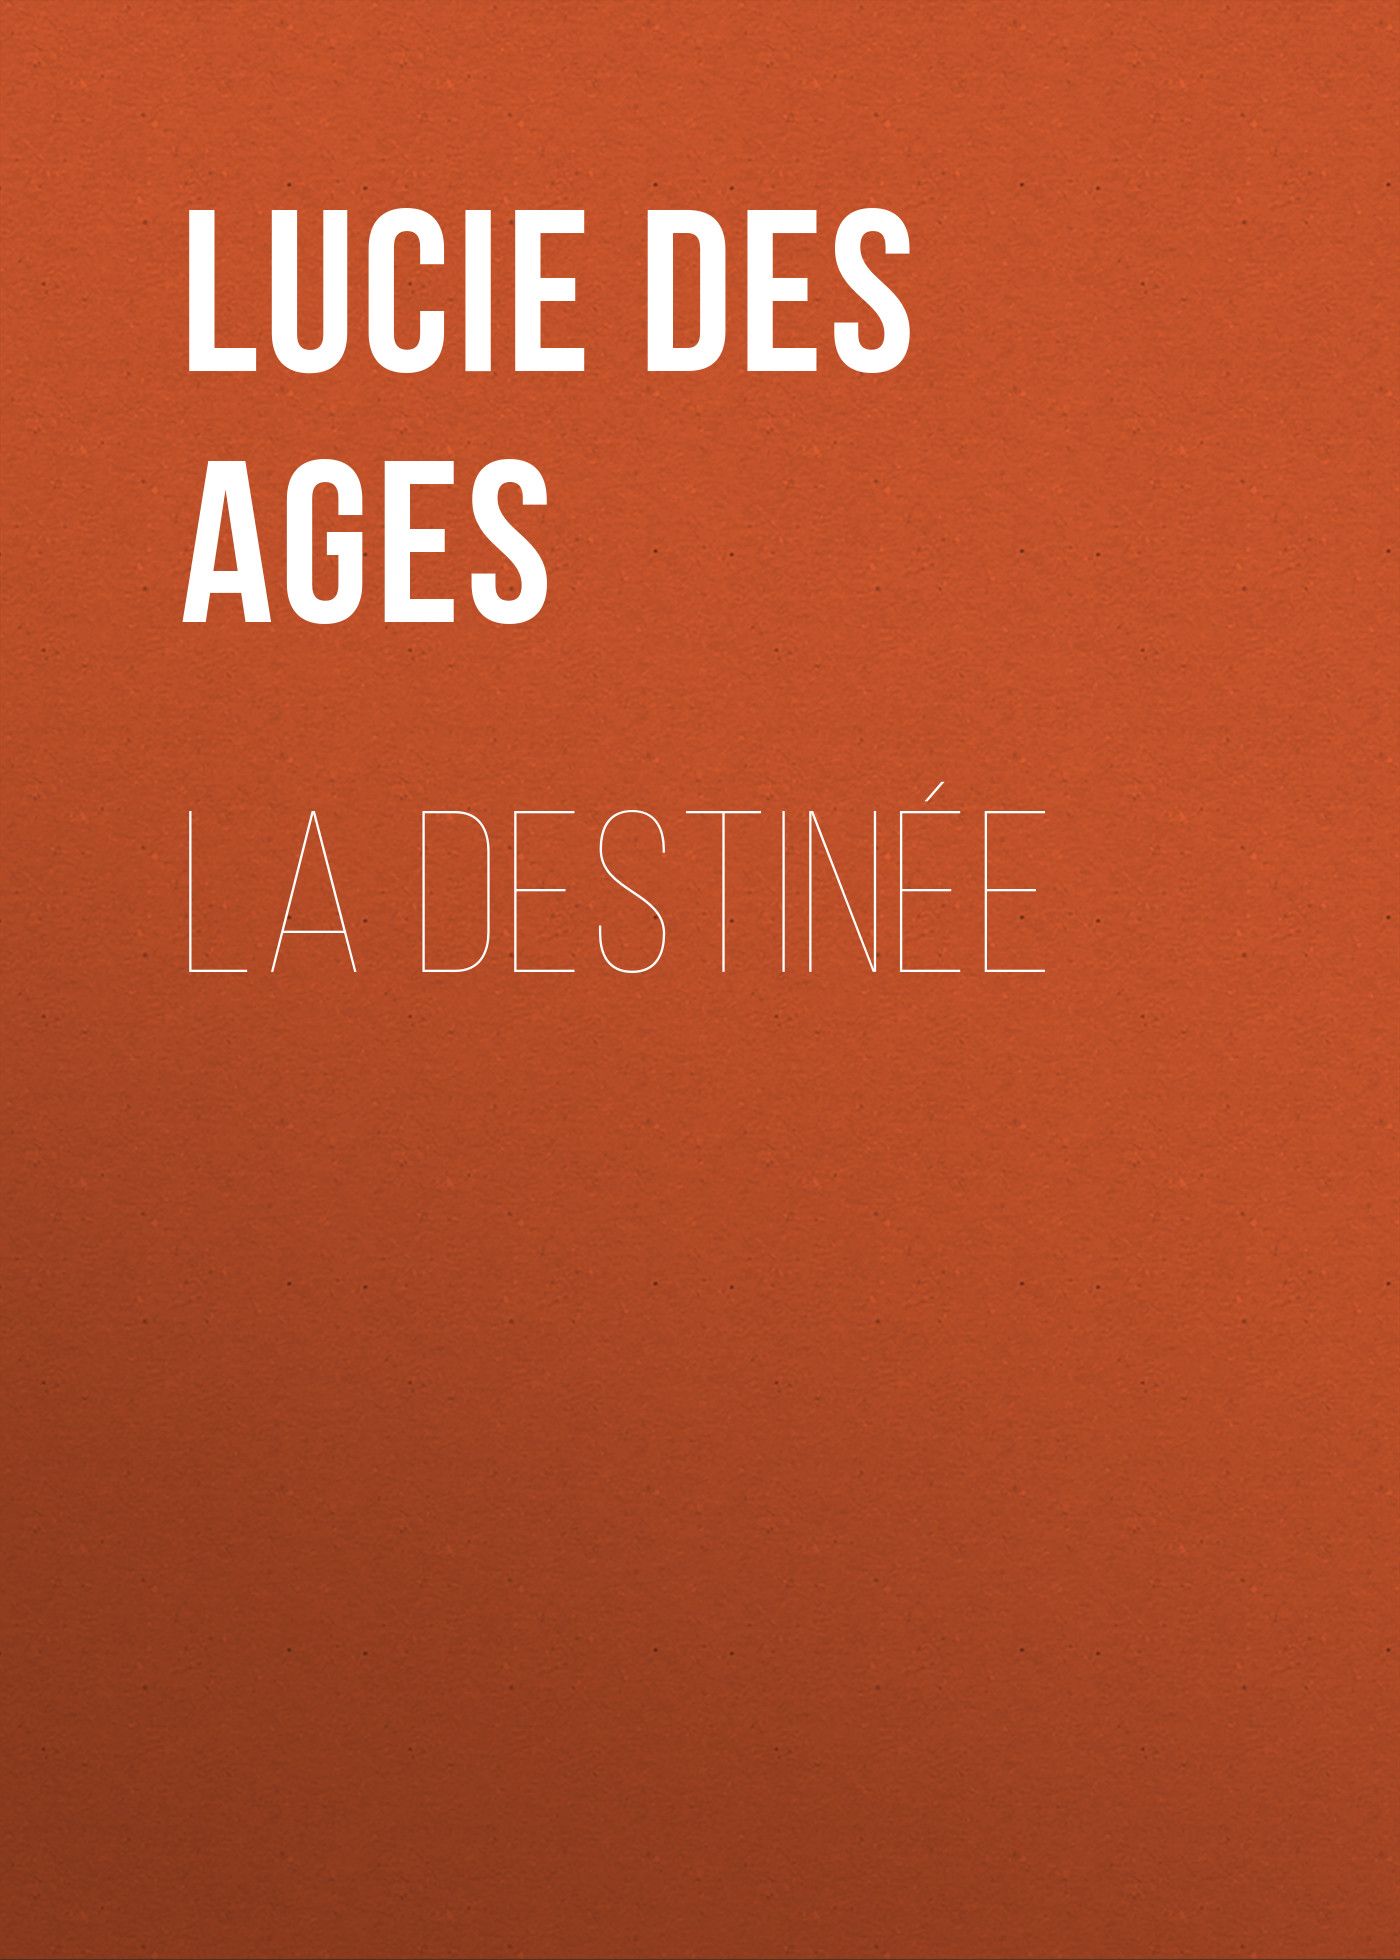 Книга La destinée из серии , созданная Lucie des Ages, может относится к жанру Зарубежная старинная литература, Зарубежная классика. Стоимость электронной книги La destinée с идентификатором 24173284 составляет 5.99 руб.